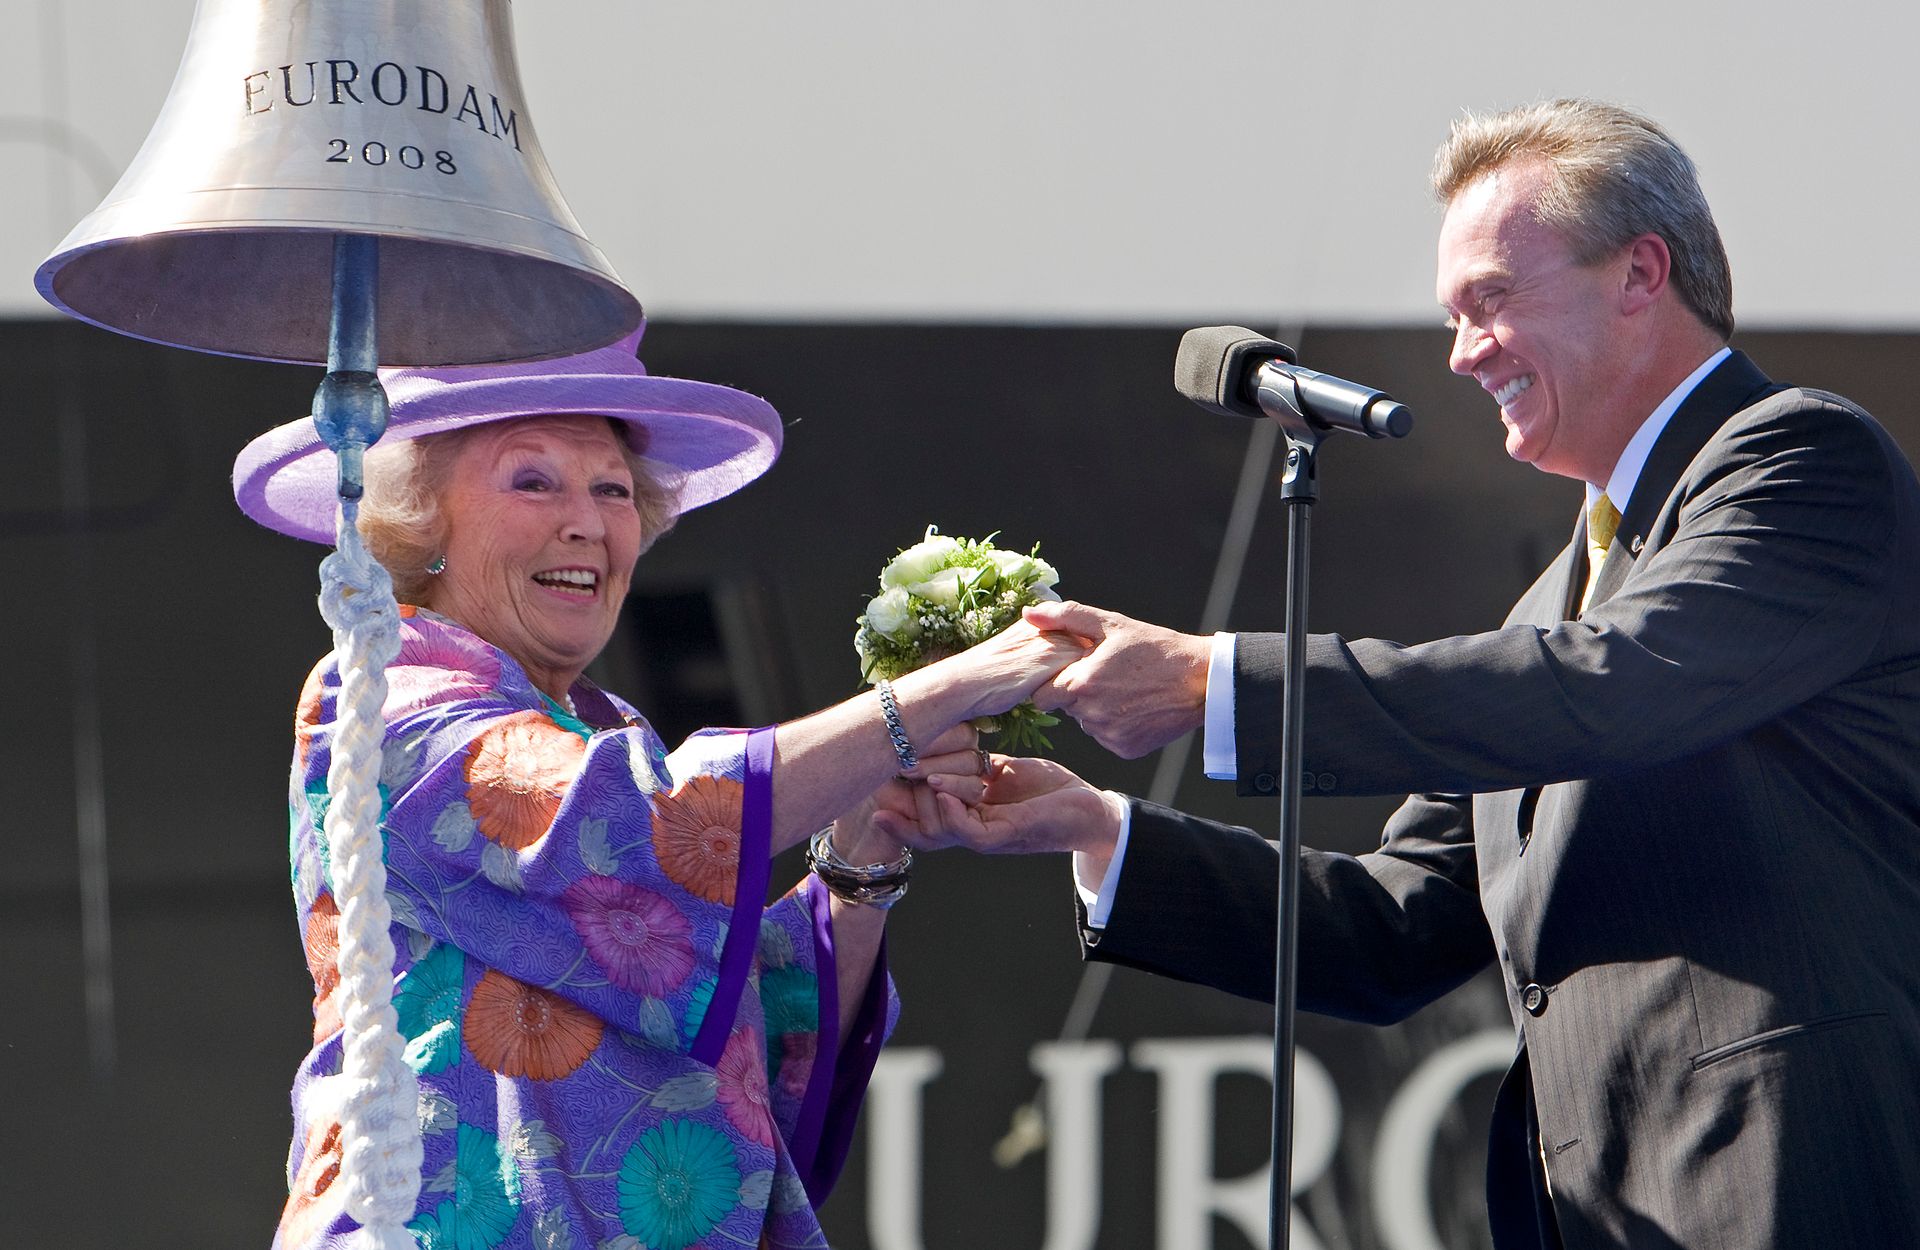 In 2008 doopte (toen nog) koningin Beatrix de Eurodam.